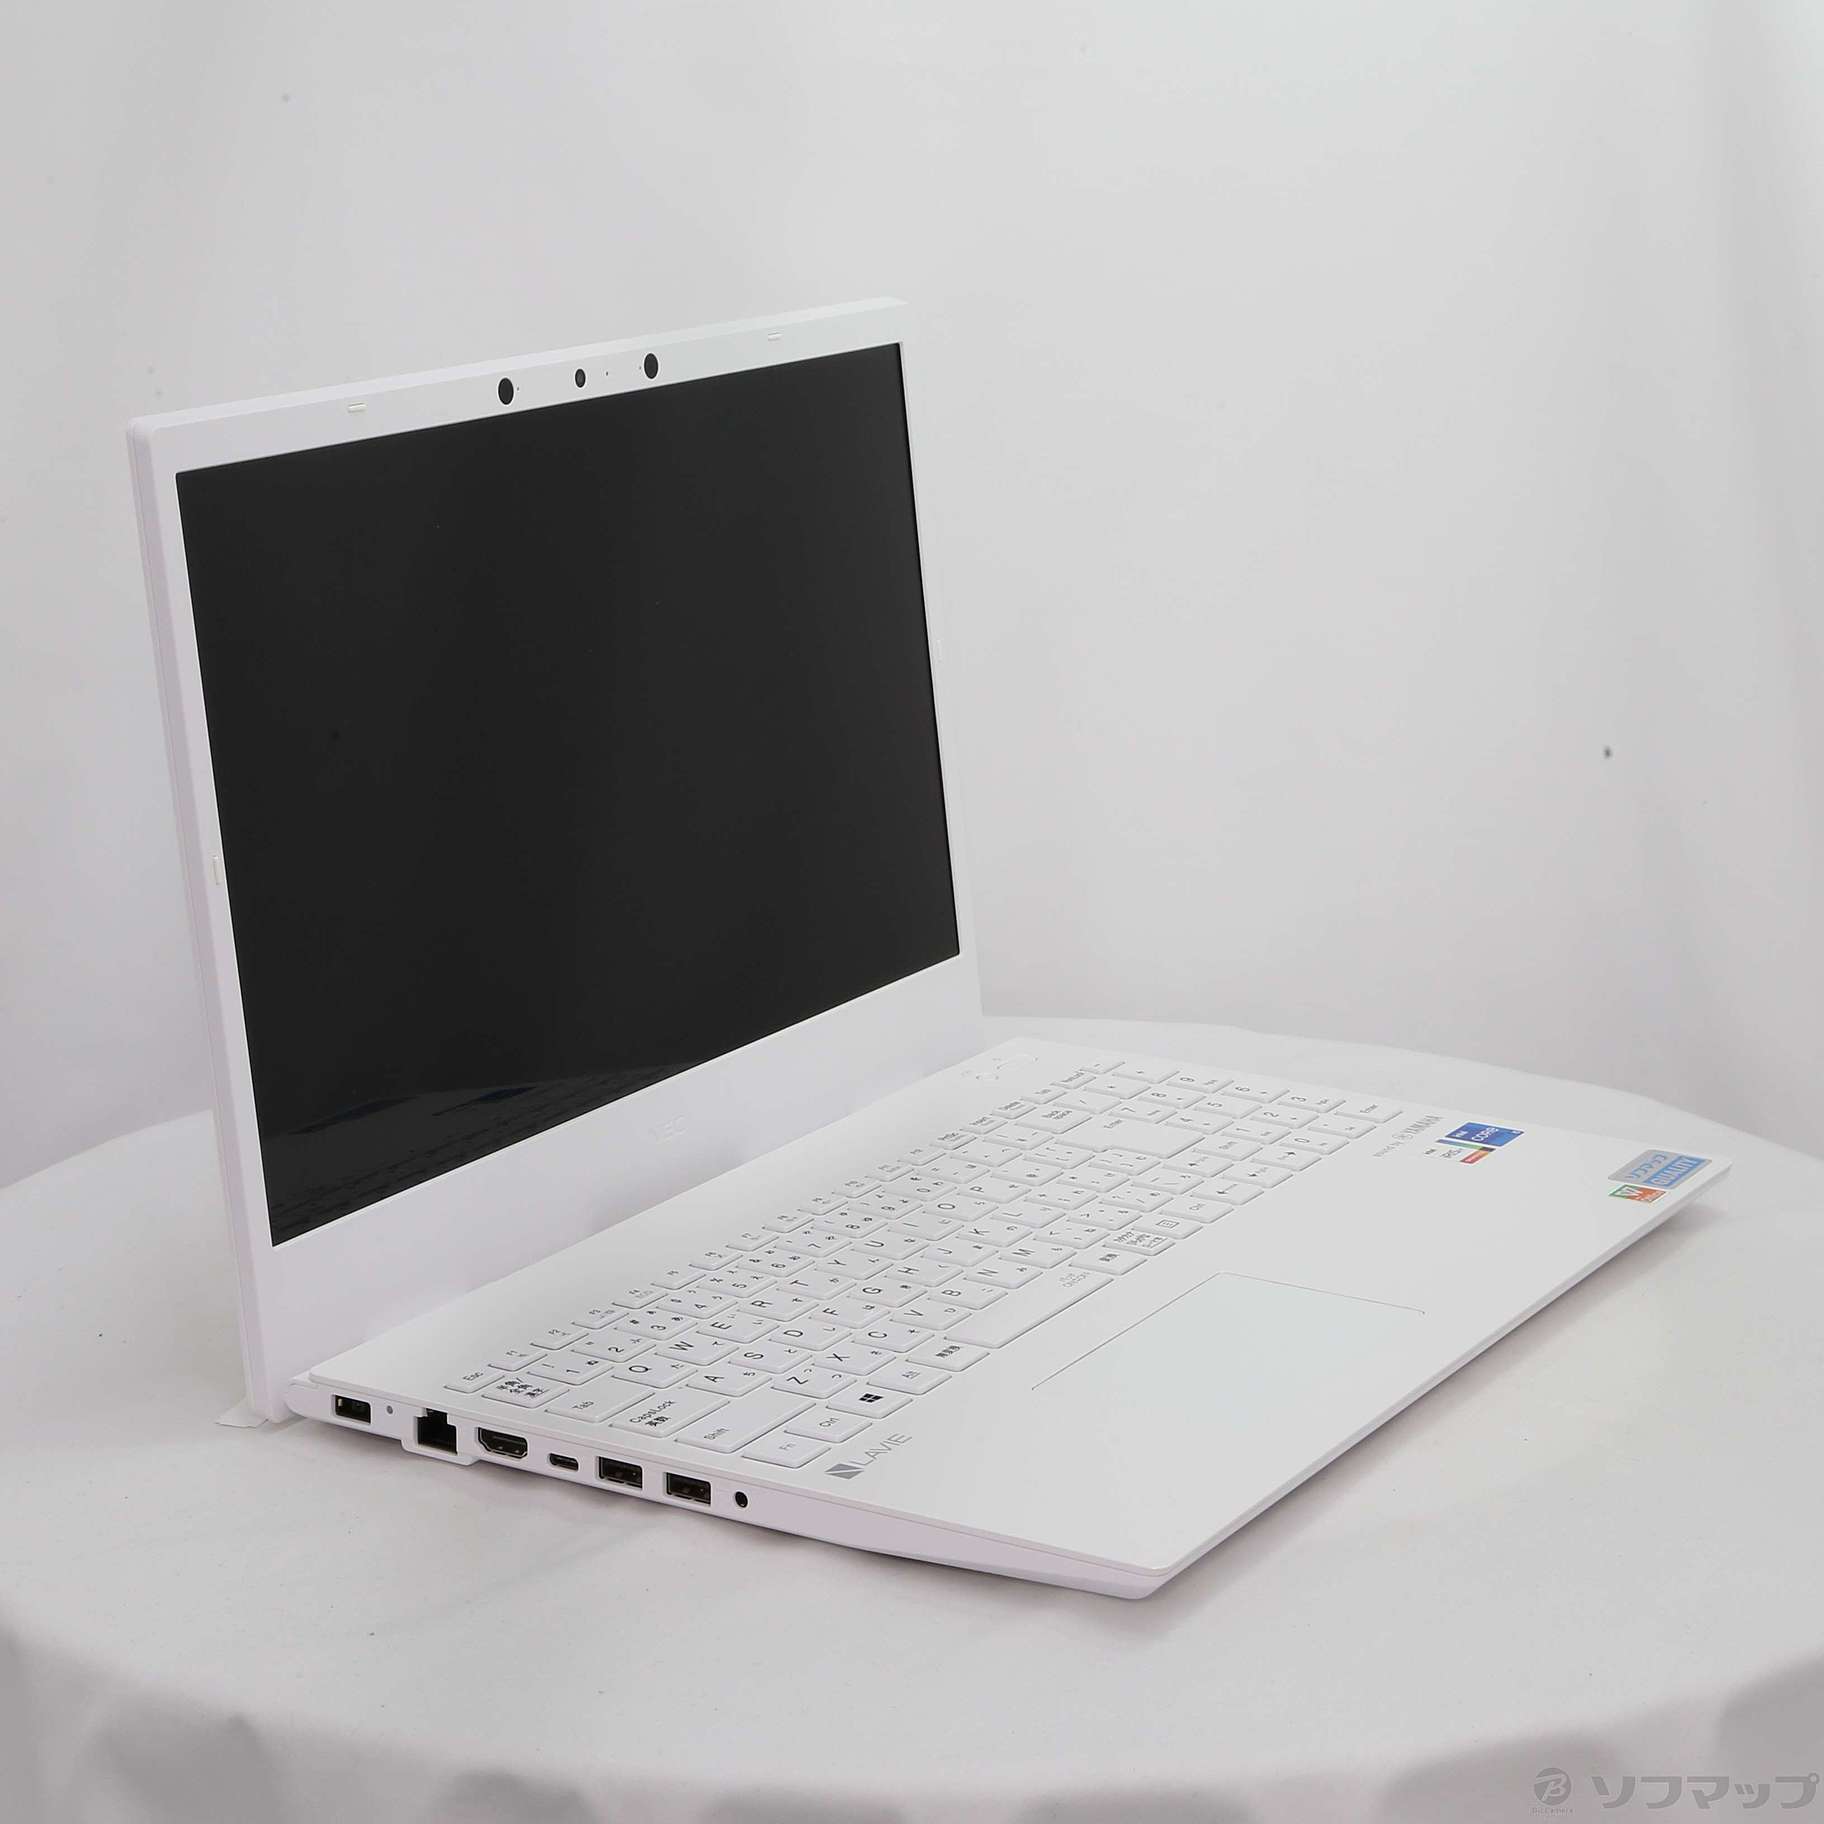 セール対象品 LaVie N15 PC-N1555BAW-J パールホワイト 〔Windows 10〕